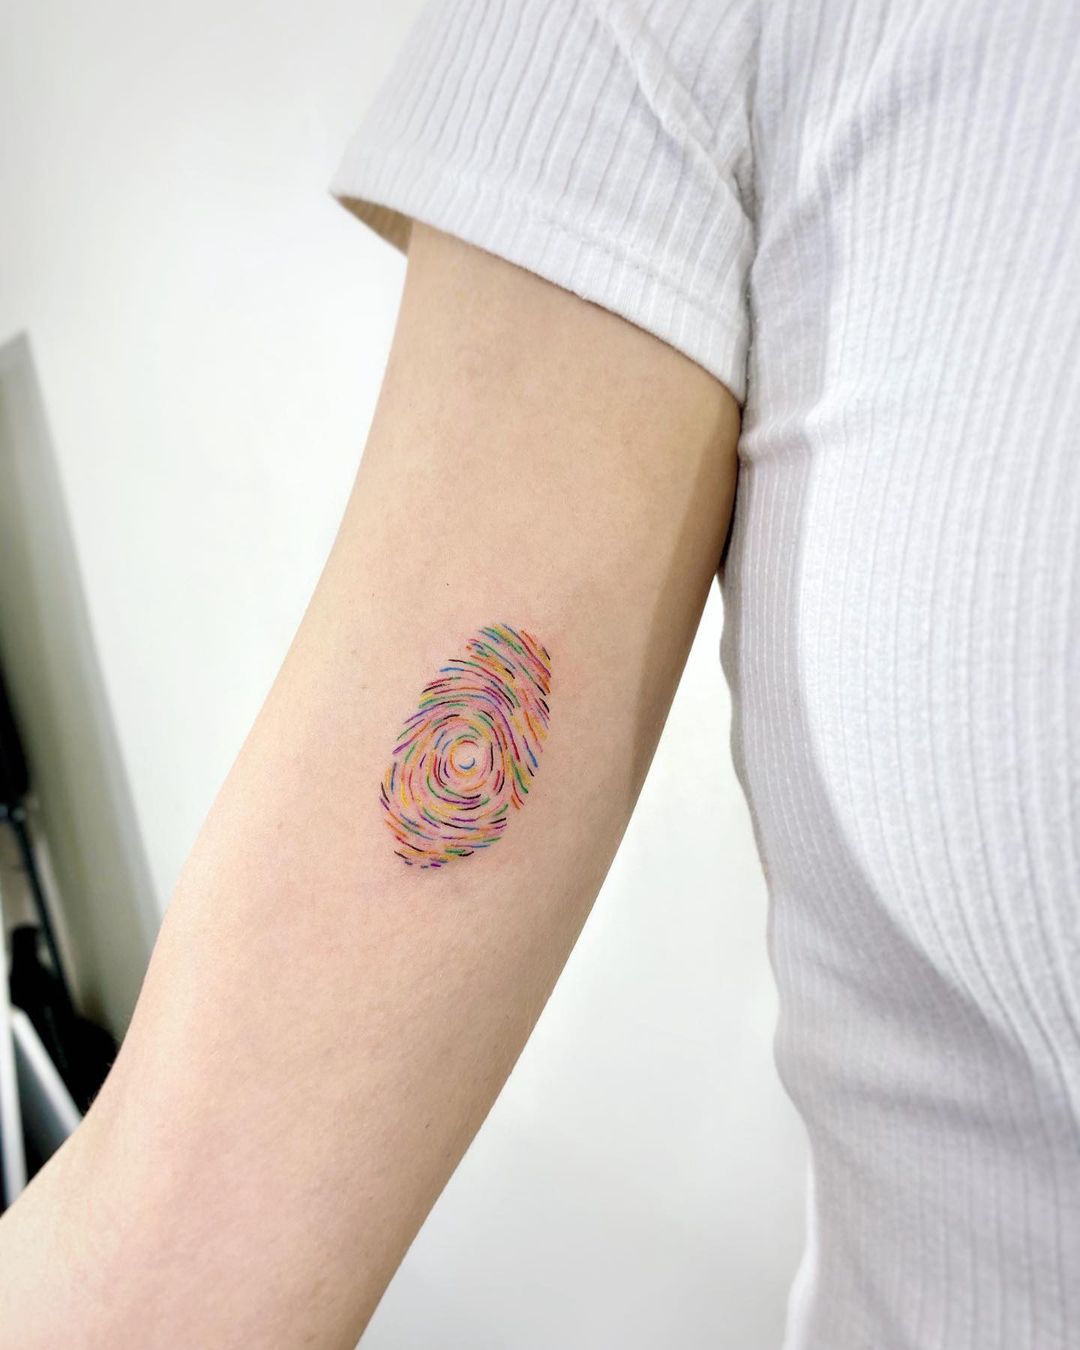 thumbprint tattoos by naleak tattoo